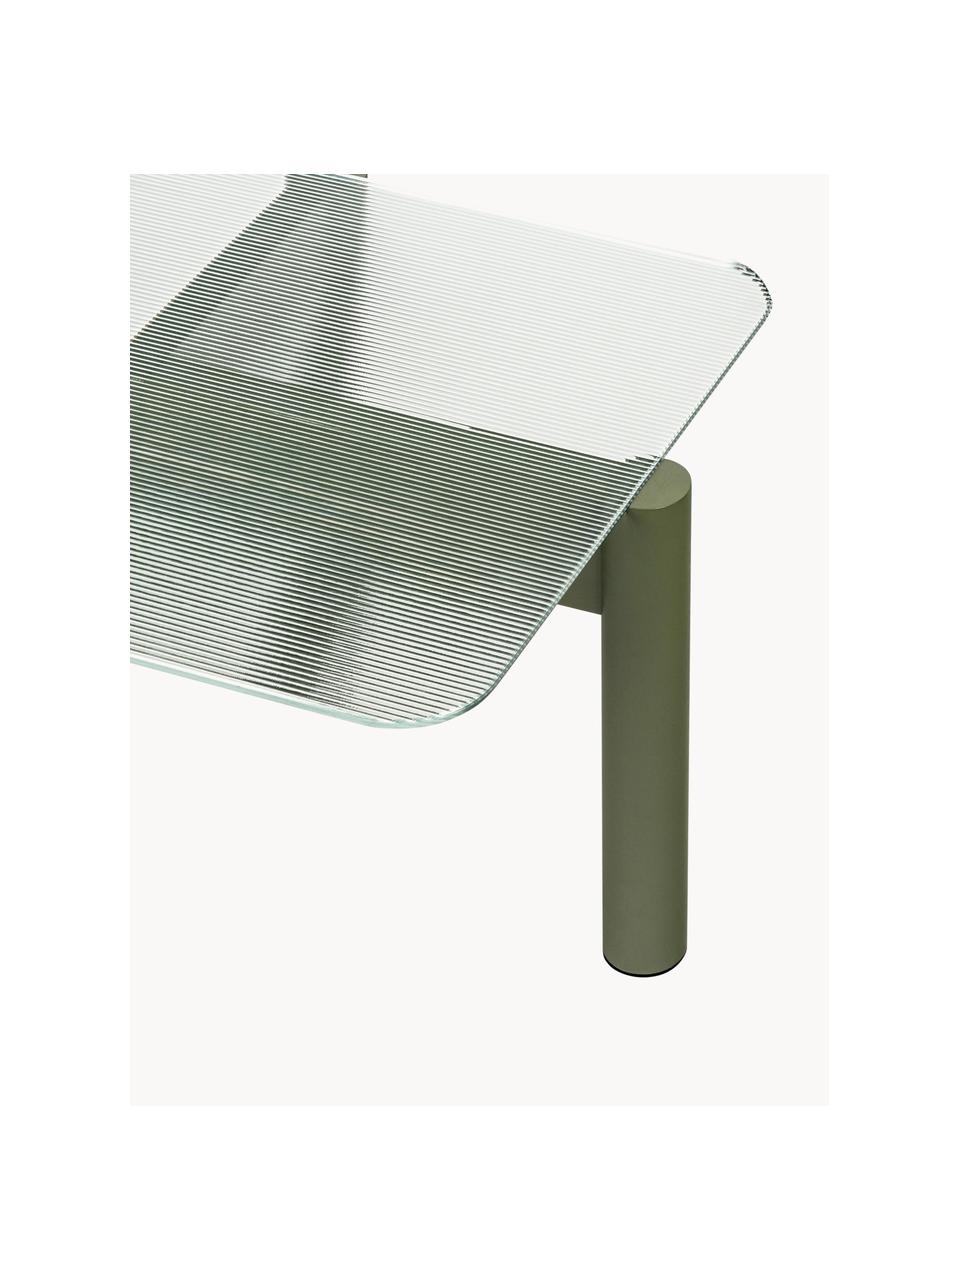 Couchtisch Kob aus Buchenholz mit Glasplatte, Tischplatte: Glas, Beine: Buchenholz, Transparent, Olivgrün, B 110 x T 55 cm